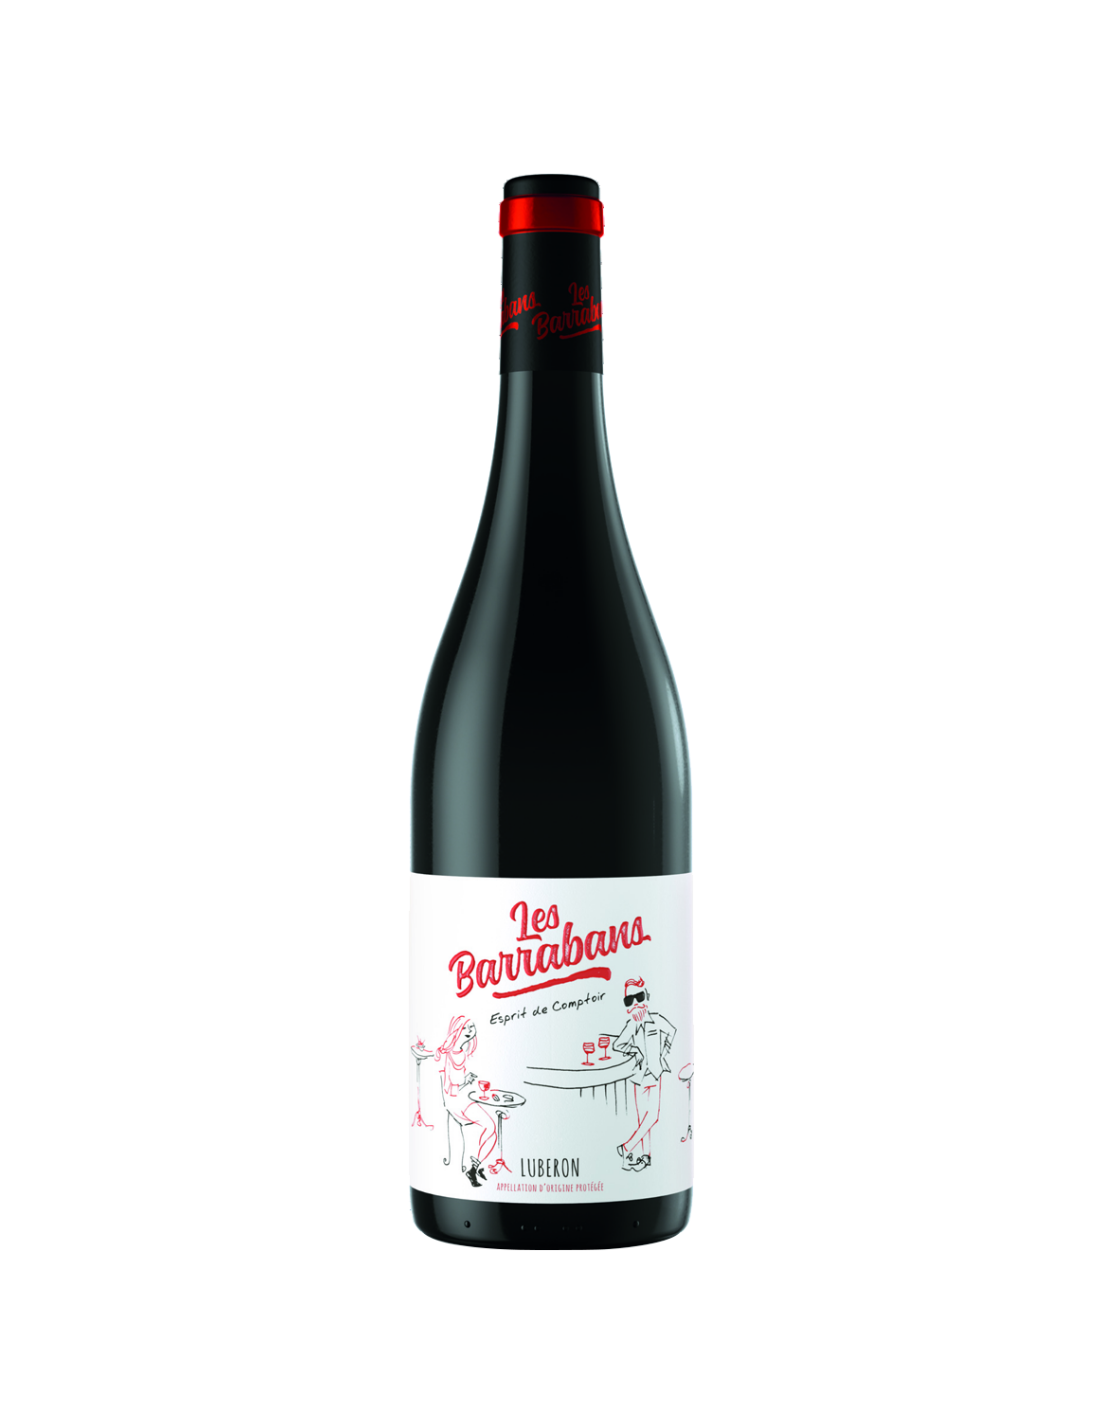 Vin rosu sec Les Barrabans Luberon, 14% alc., 0.75L, Franta alcooldiscount.ro